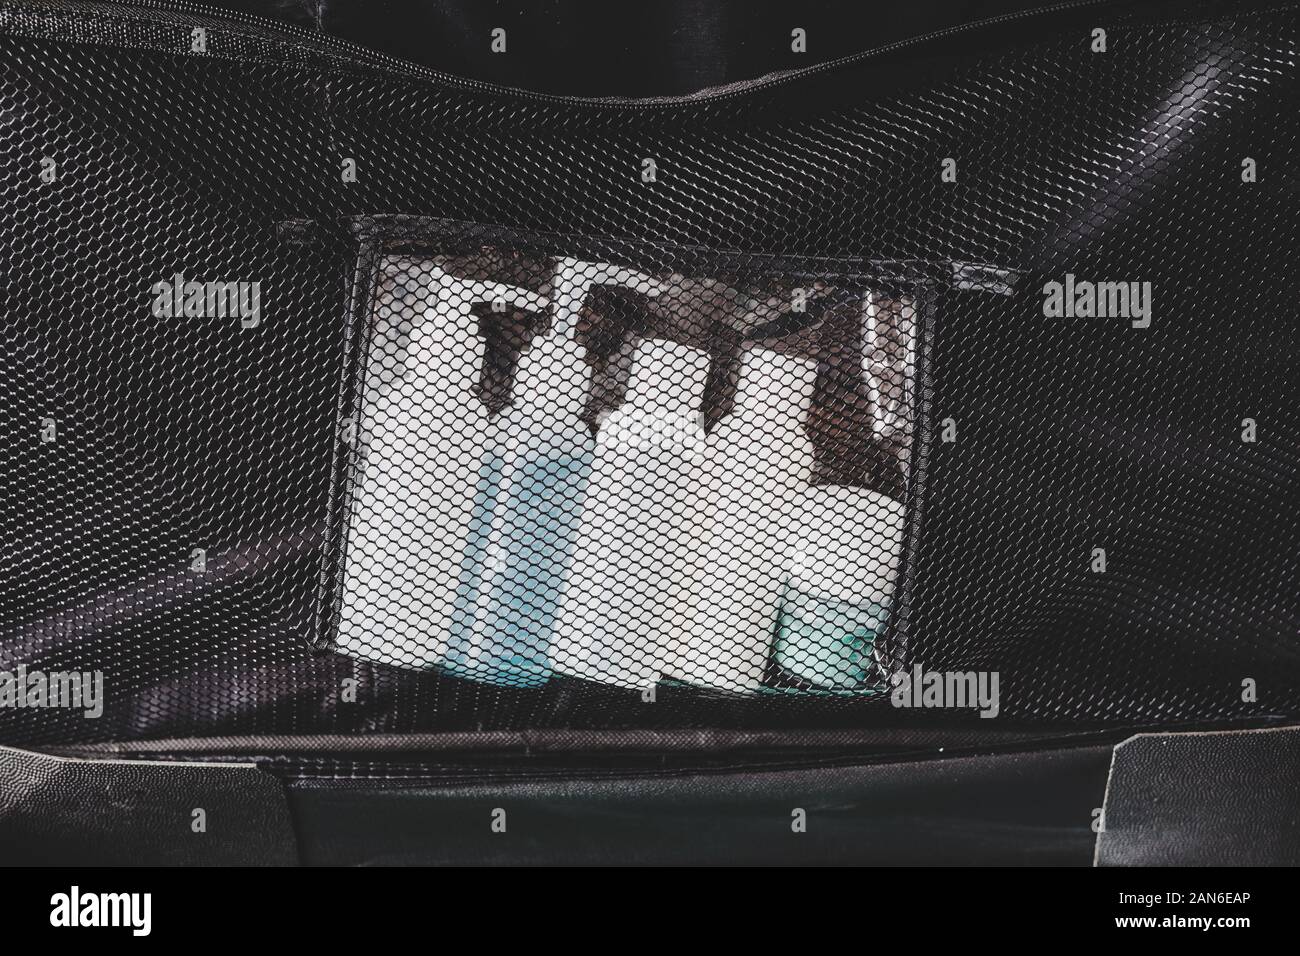 Bolsa transparente con las cantidades de líquidos permitidas para avión  equipaje de mano Fotografía de stock - Alamy